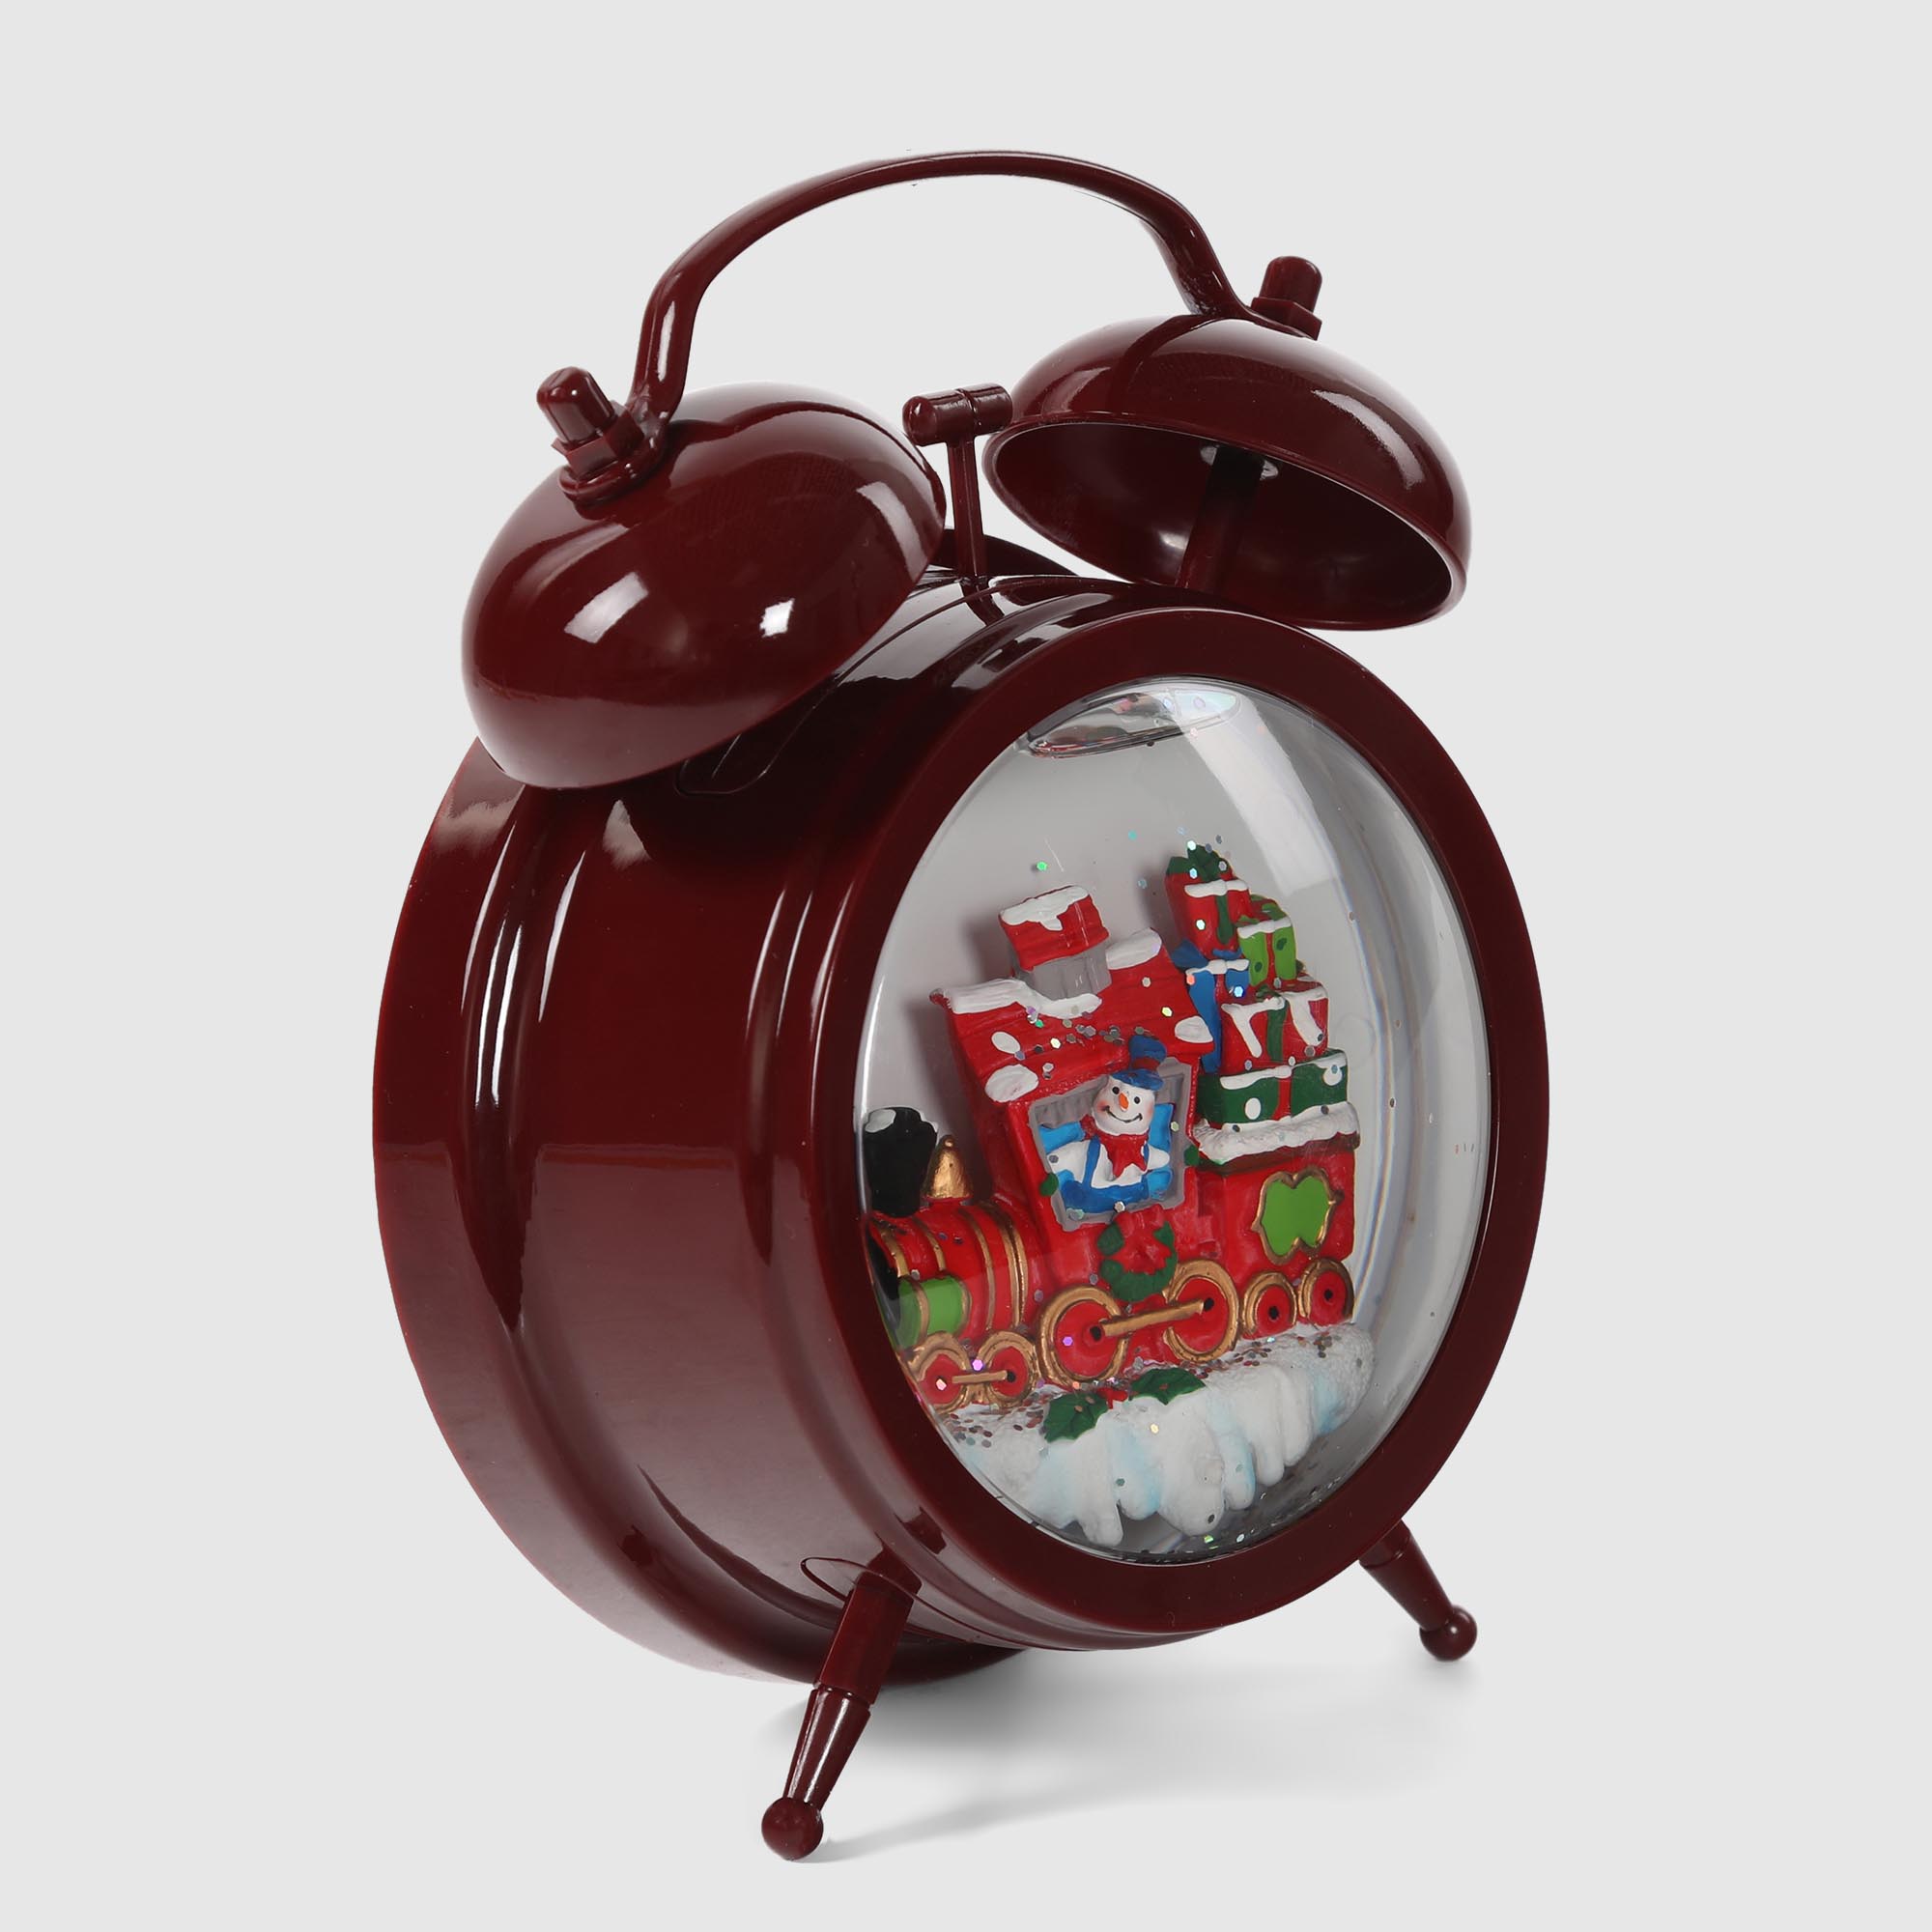 Фигура анимационная Timstor часы-водяной шар 19 см в ассортименте